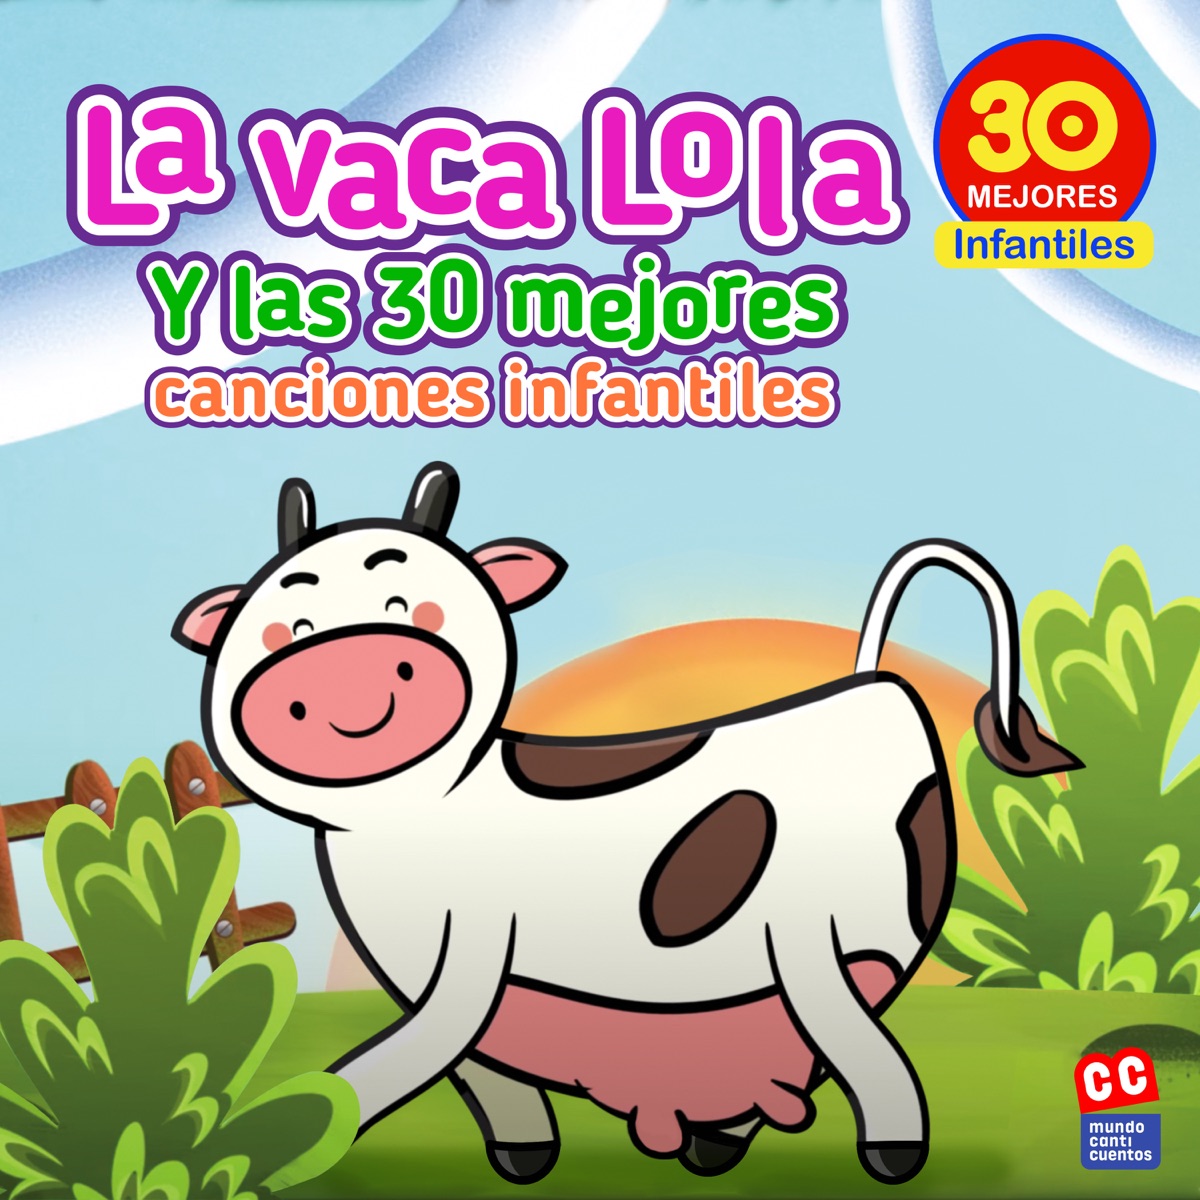 La Vaca Lola and La Vaca Lola La Vaca Lola - Juguemos En El Bosque